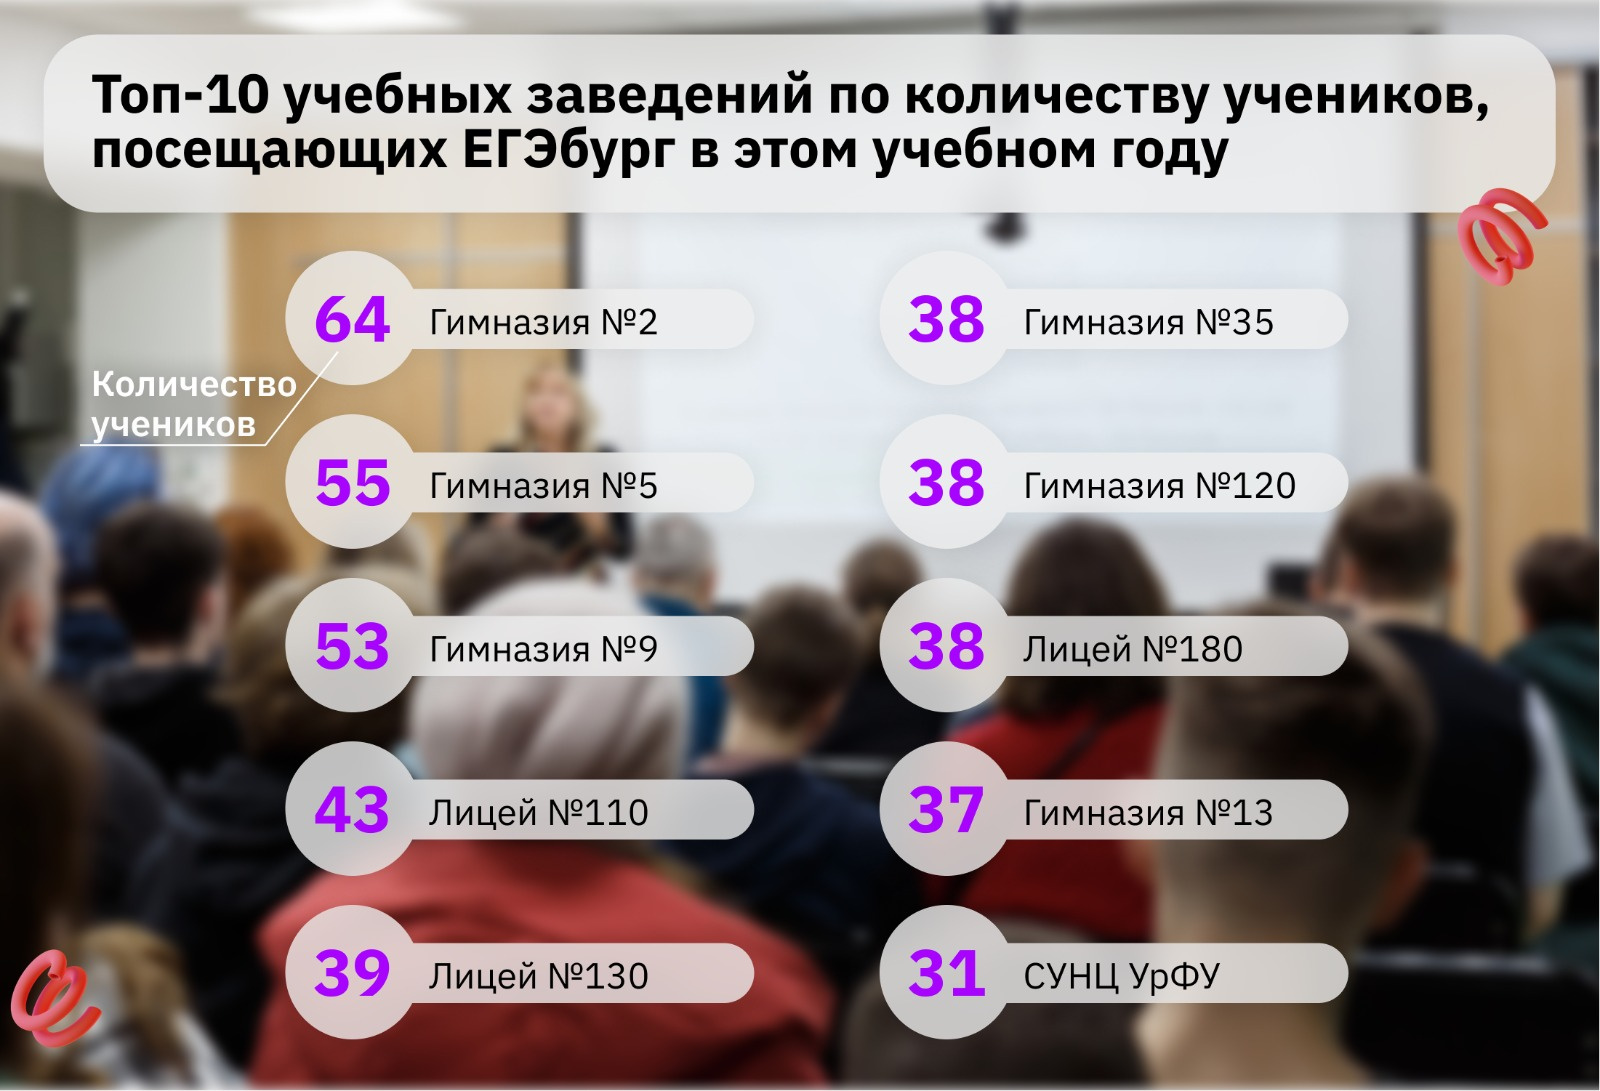 Удивительно, но больше всего в ЕГЭбурге учеников из лучших школ Екатеринбурга